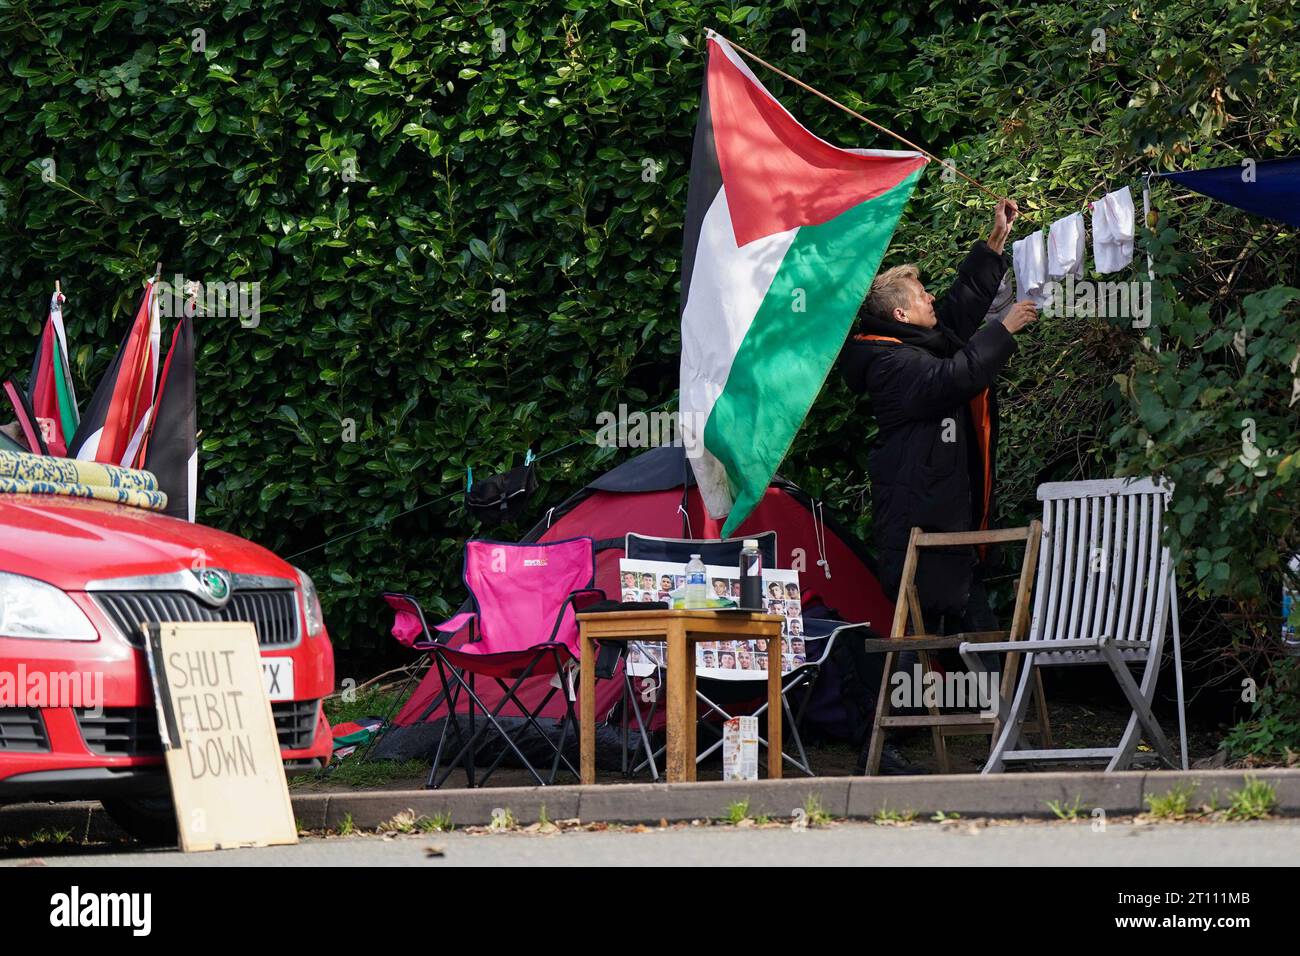 Pro-palästinensische Aktivisten vor der UAV-Fabrik für taktische Systeme in Leicester. Die Gruppe behauptet, dass die Fabrik Drohnen baut, die dann vom israelischen Militär gegen den Staat Palästina eingesetzt werden. UAV Tactical Systems war Schauplatz einer Reihe von Protesten der Aktivistengruppe Palestine Action. Bilddatum: Dienstag, 10. Oktober 2023. Stockfoto